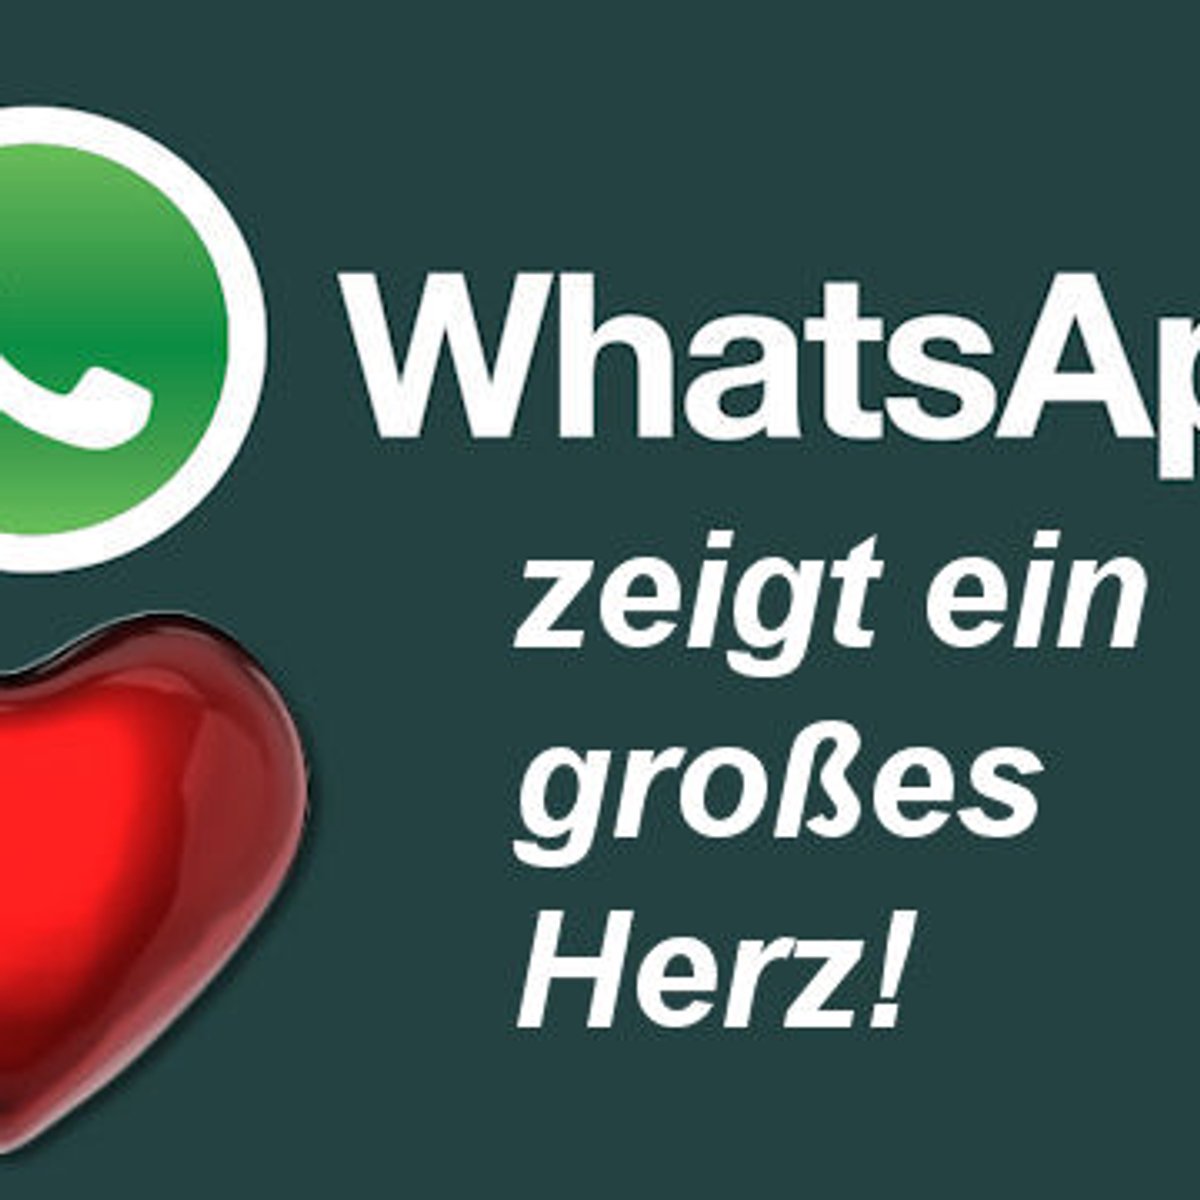 Whatsapp rotes herz bei was bedeutet Herz